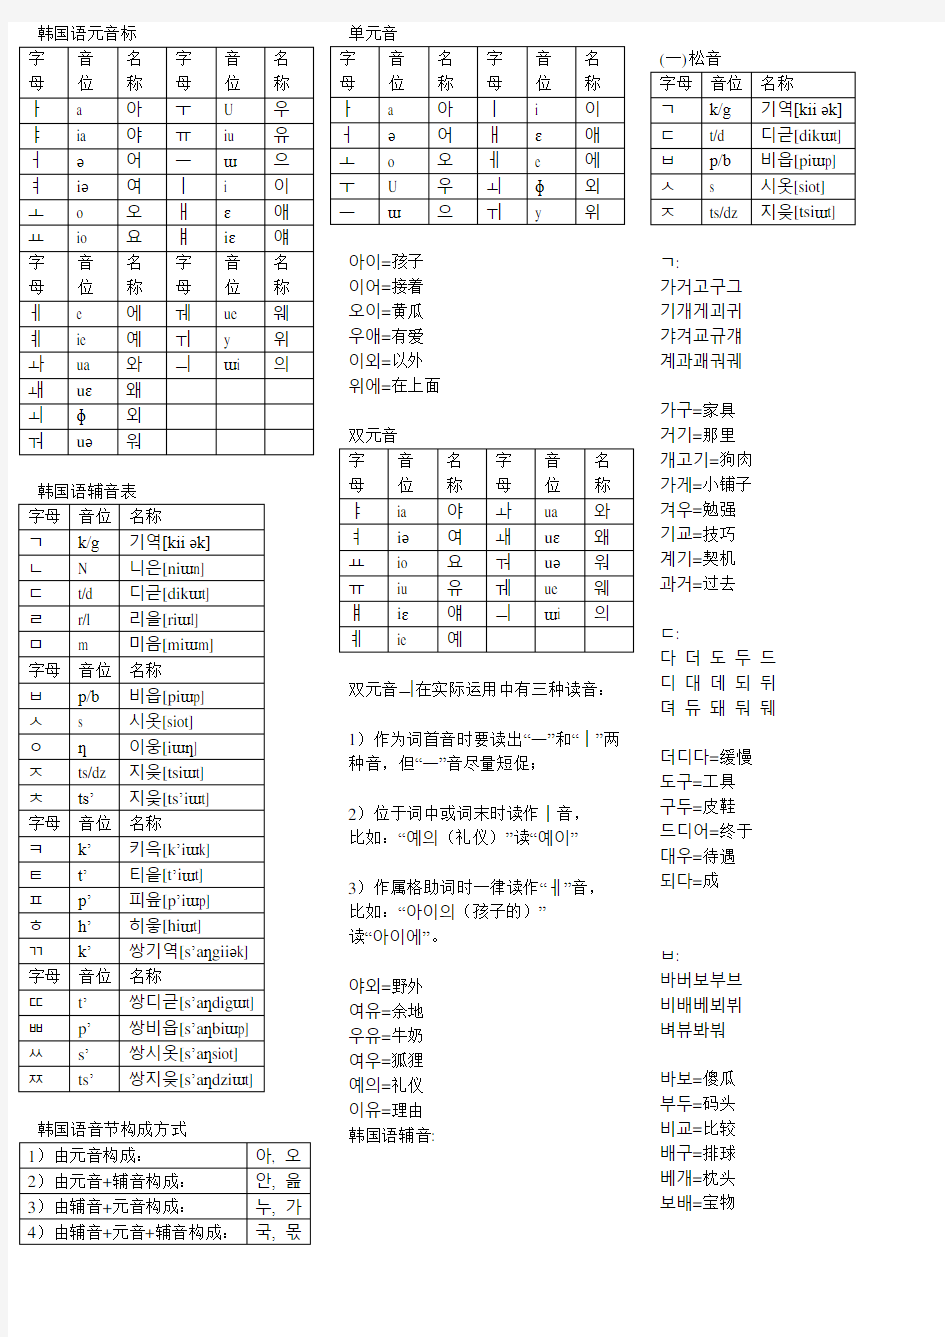 韩语学习入门发音教程笔记